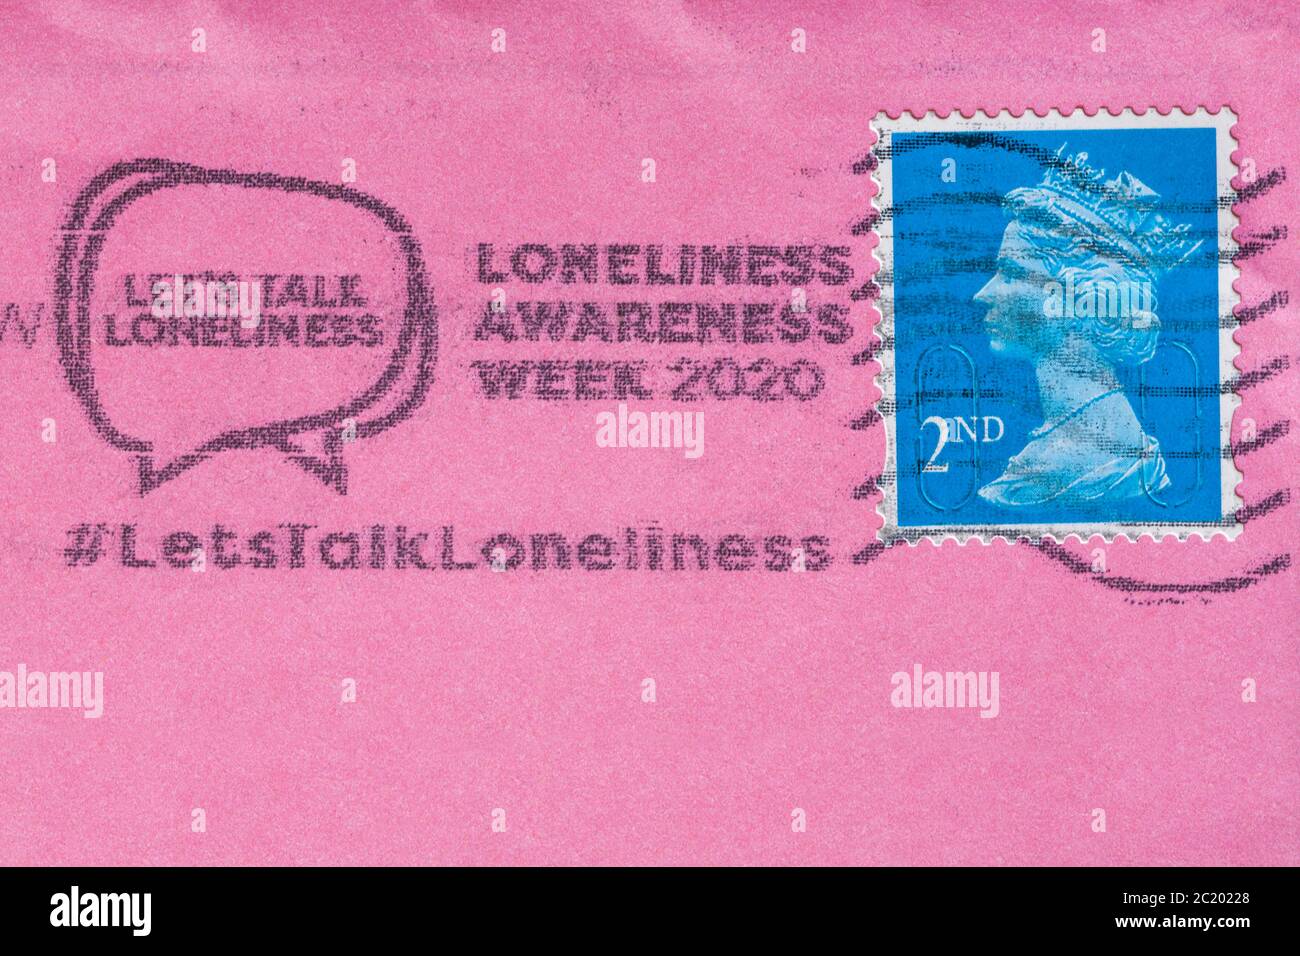 Parliamo solitudine consapevolezza settimana 2020 messaggio stampato con affrancatura postale di seconda classe sulla busta rosa Foto Stock